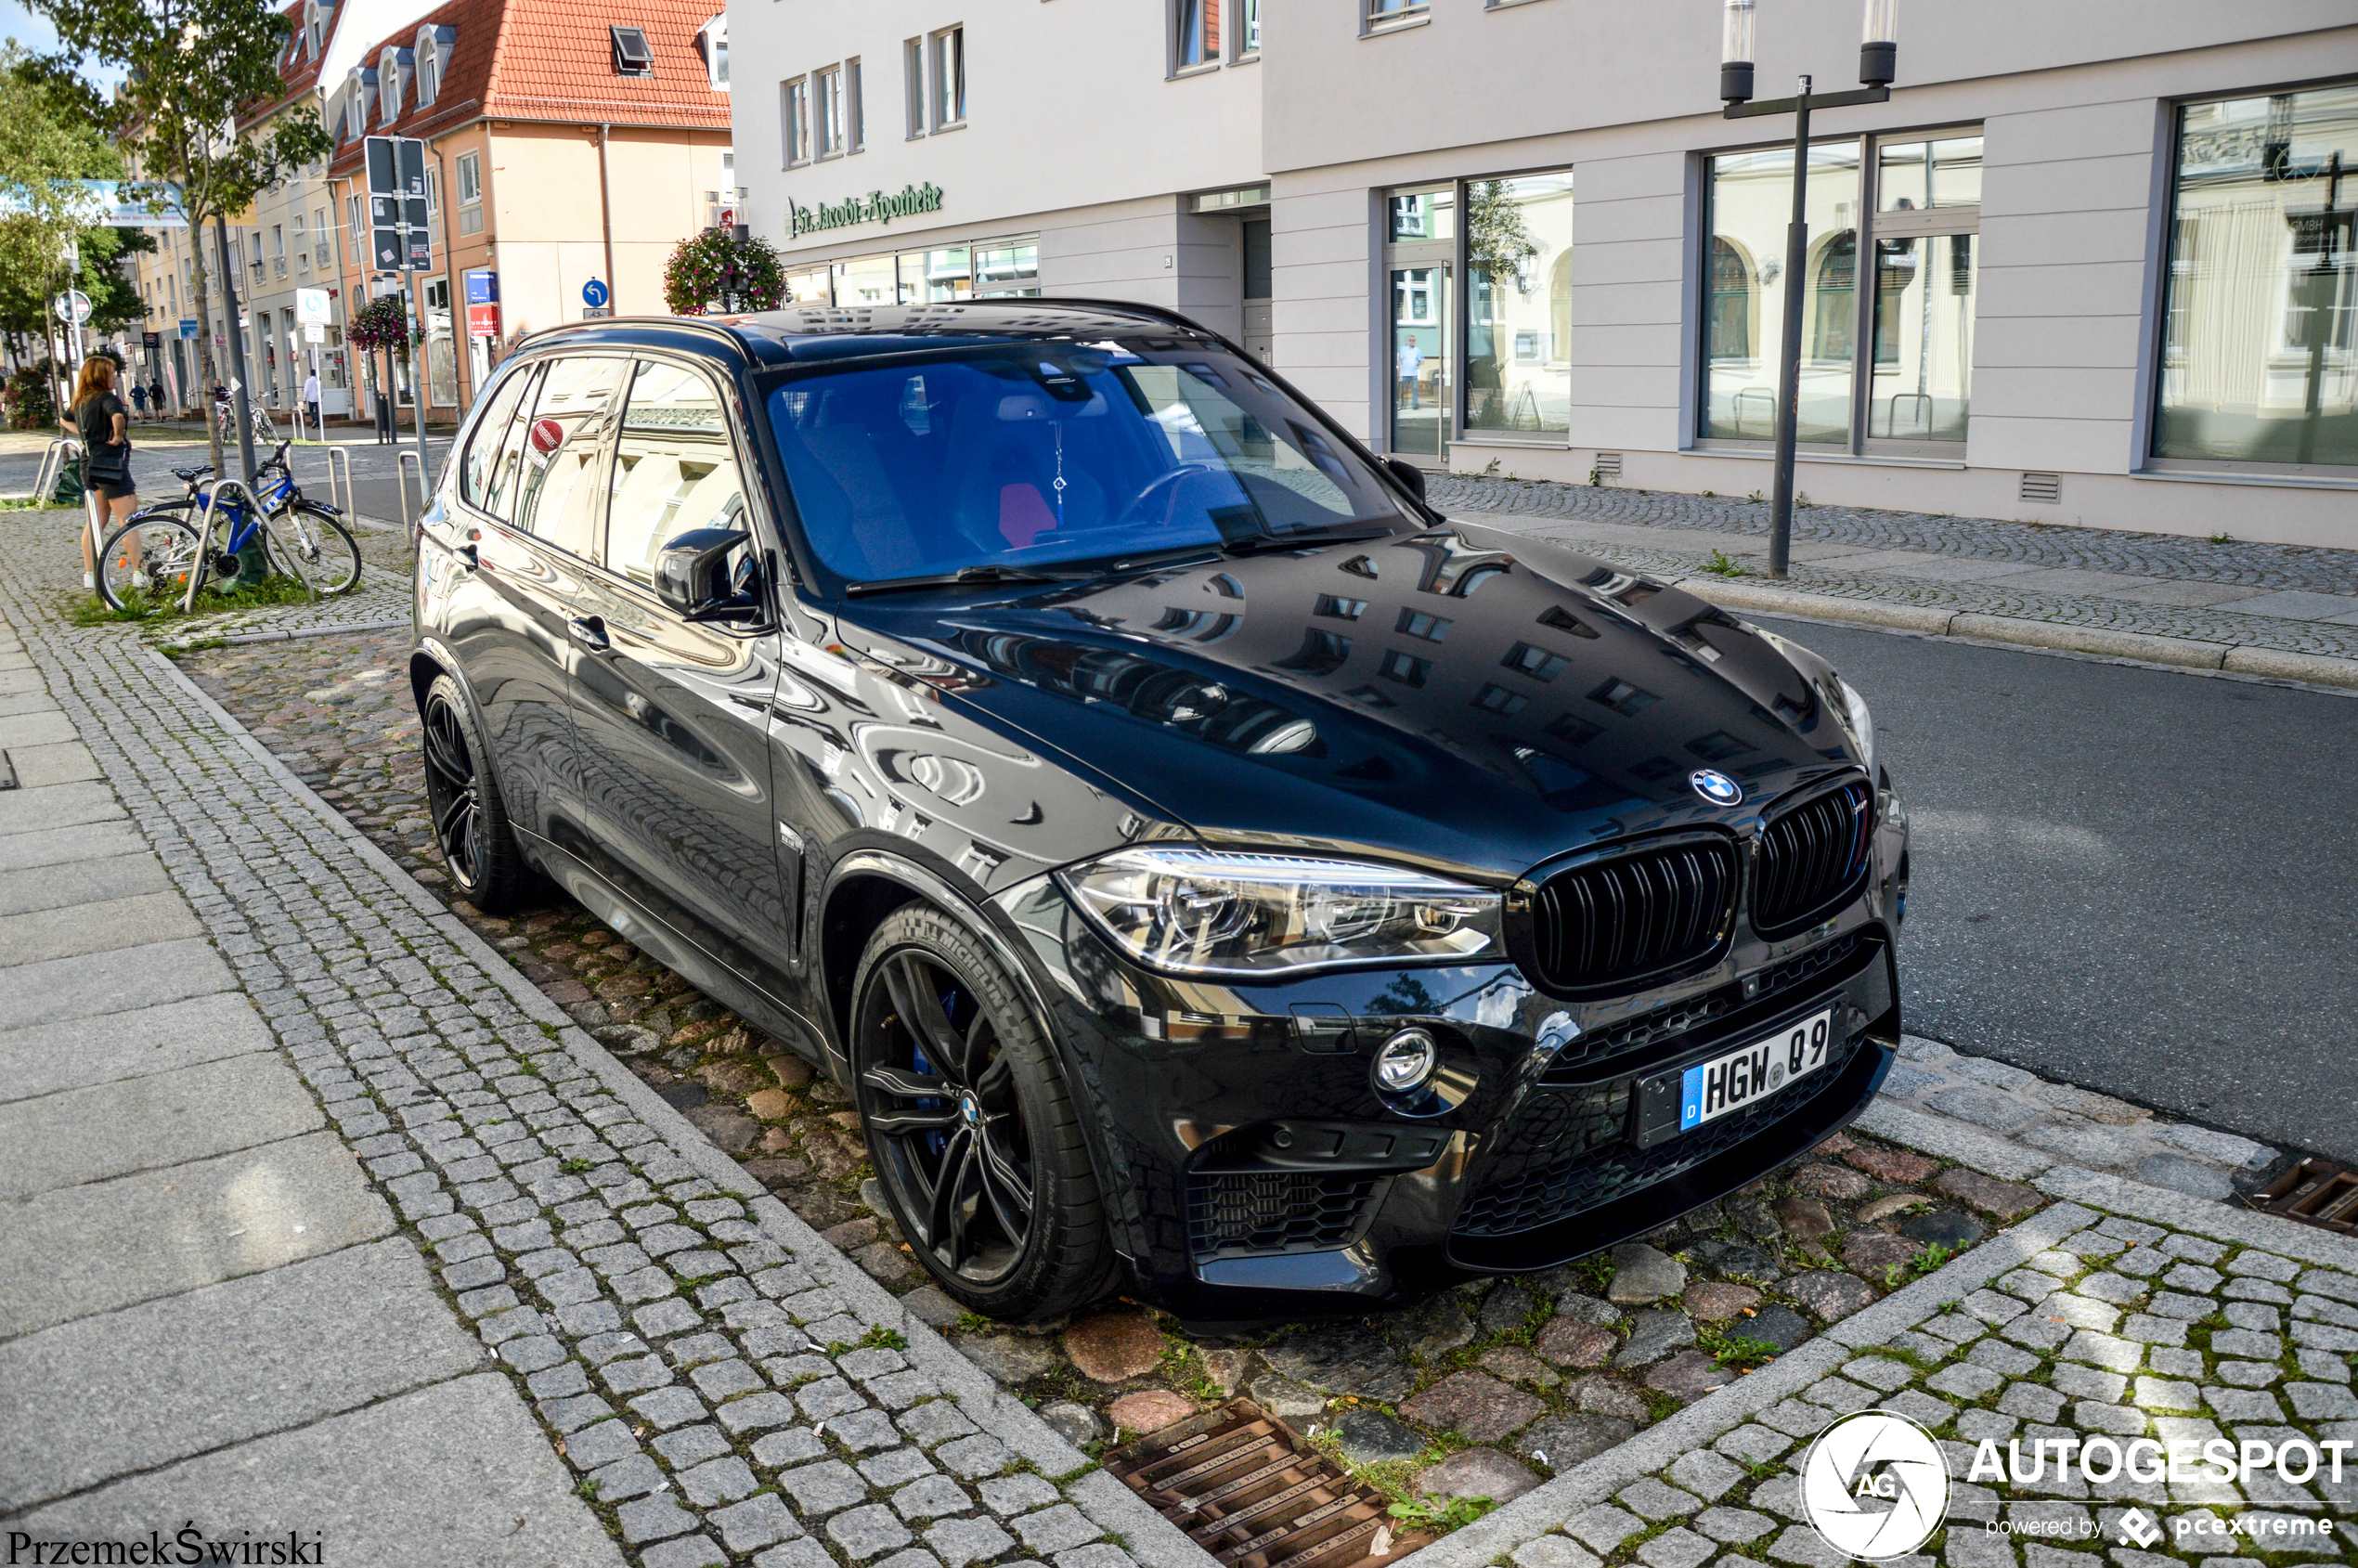 BMW X5 M F85 - 17 July 2022 - Autogespot